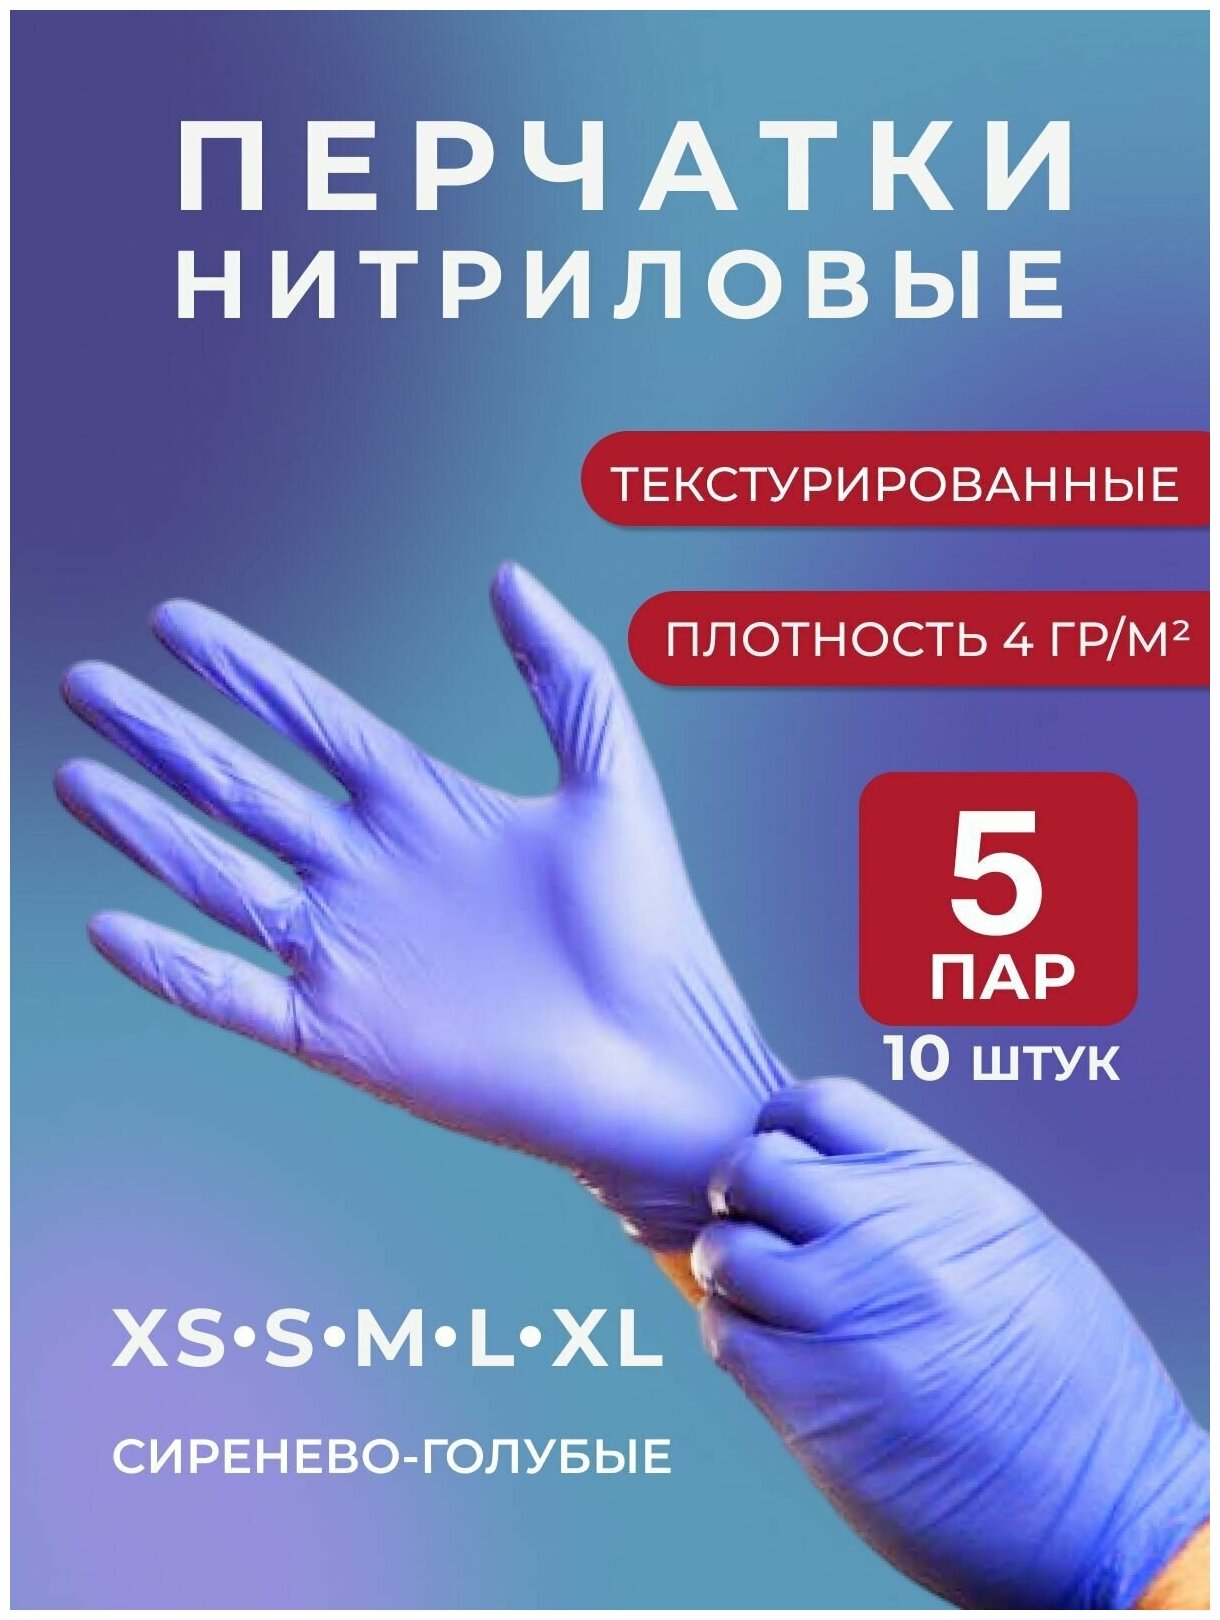 Перчатки нитриловые, одноразовые, текстурированные на пальцах, сиренево-голубой, 10 шт, 5 пар, р-р XS